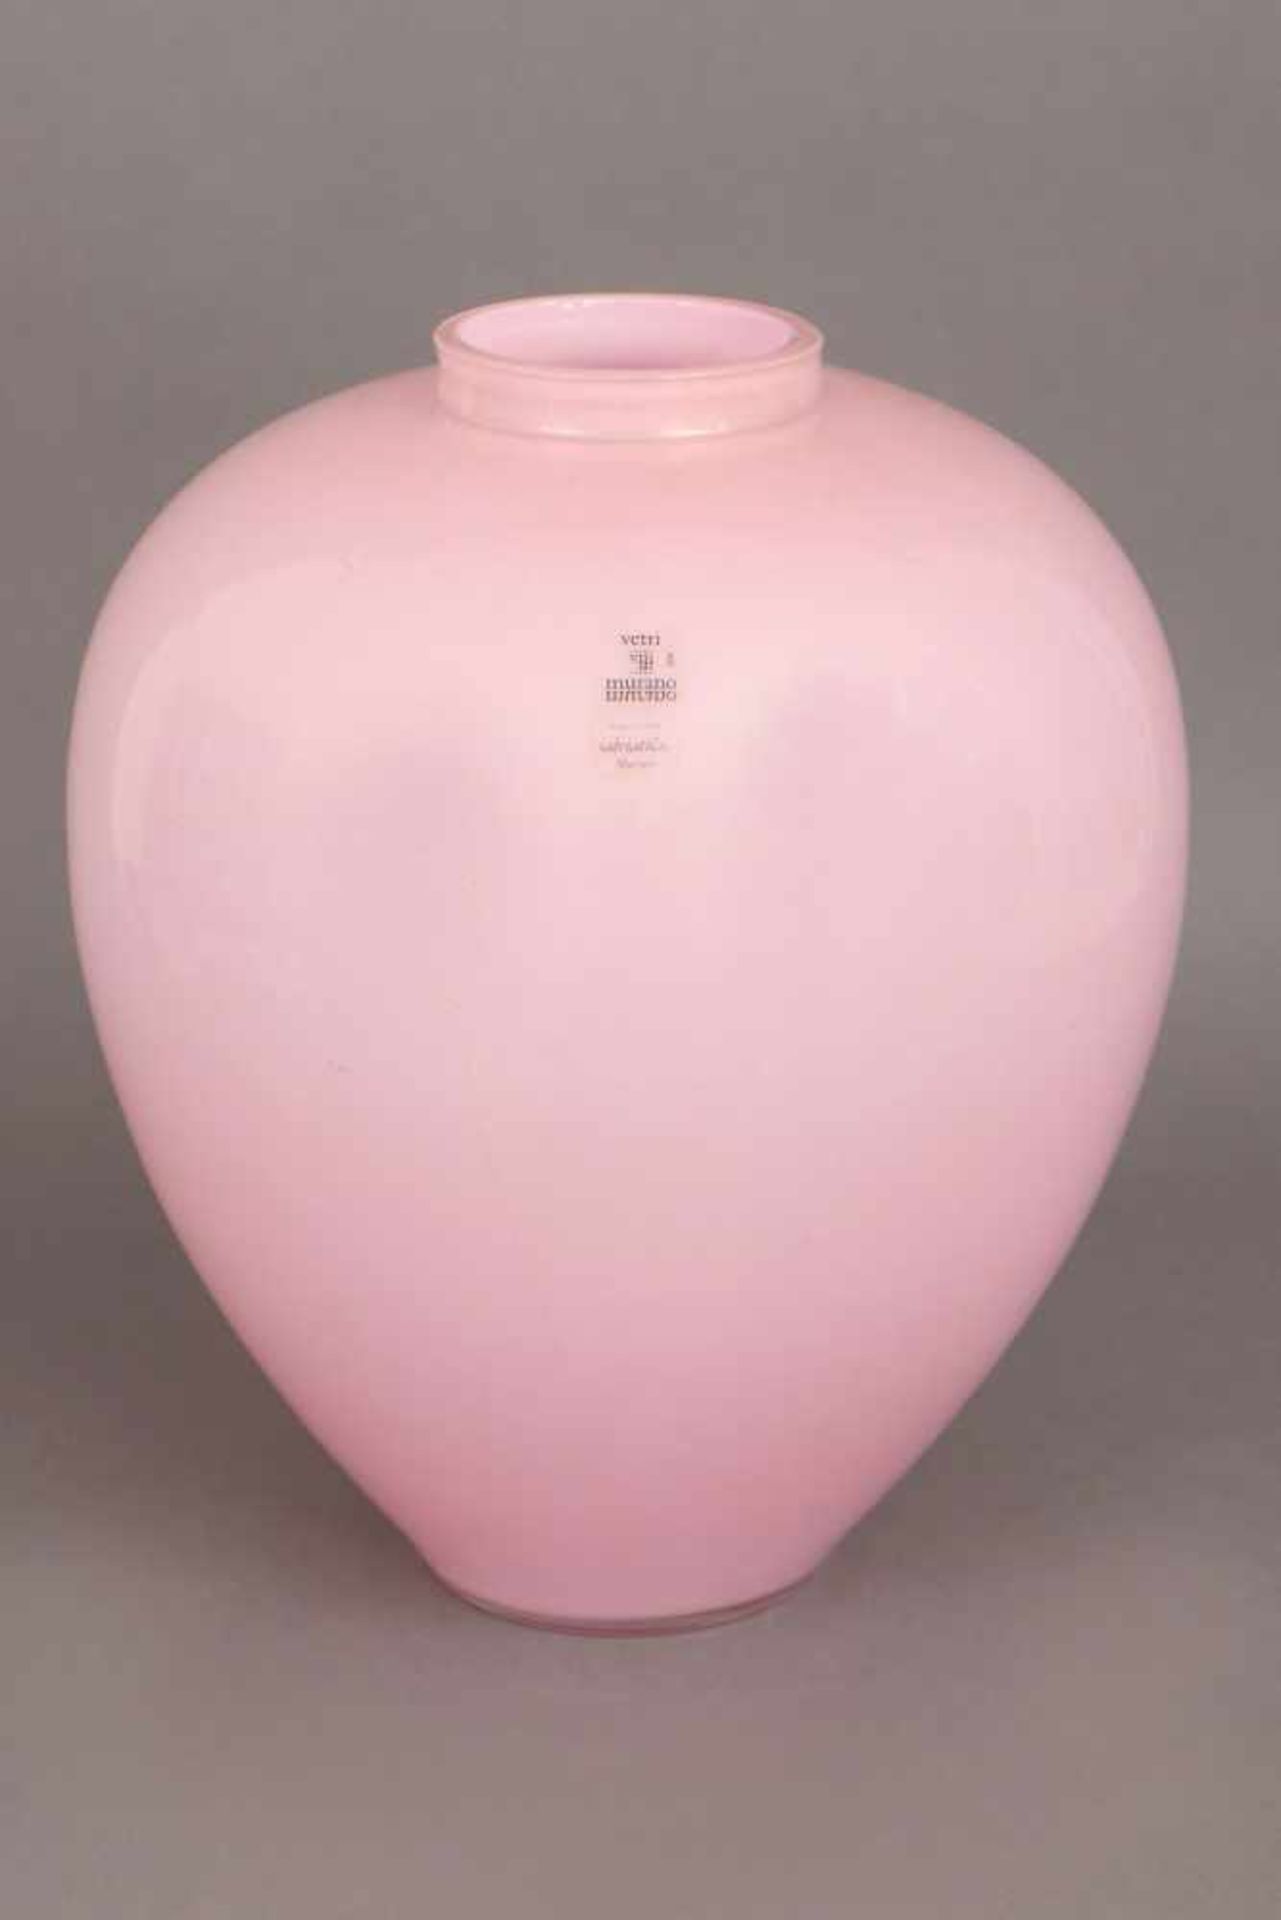 SALVIATI Murano Glasvase ovoider Korpus mit kurzem, eingezogenem Hals, rosafarbenes Glas mit feinen